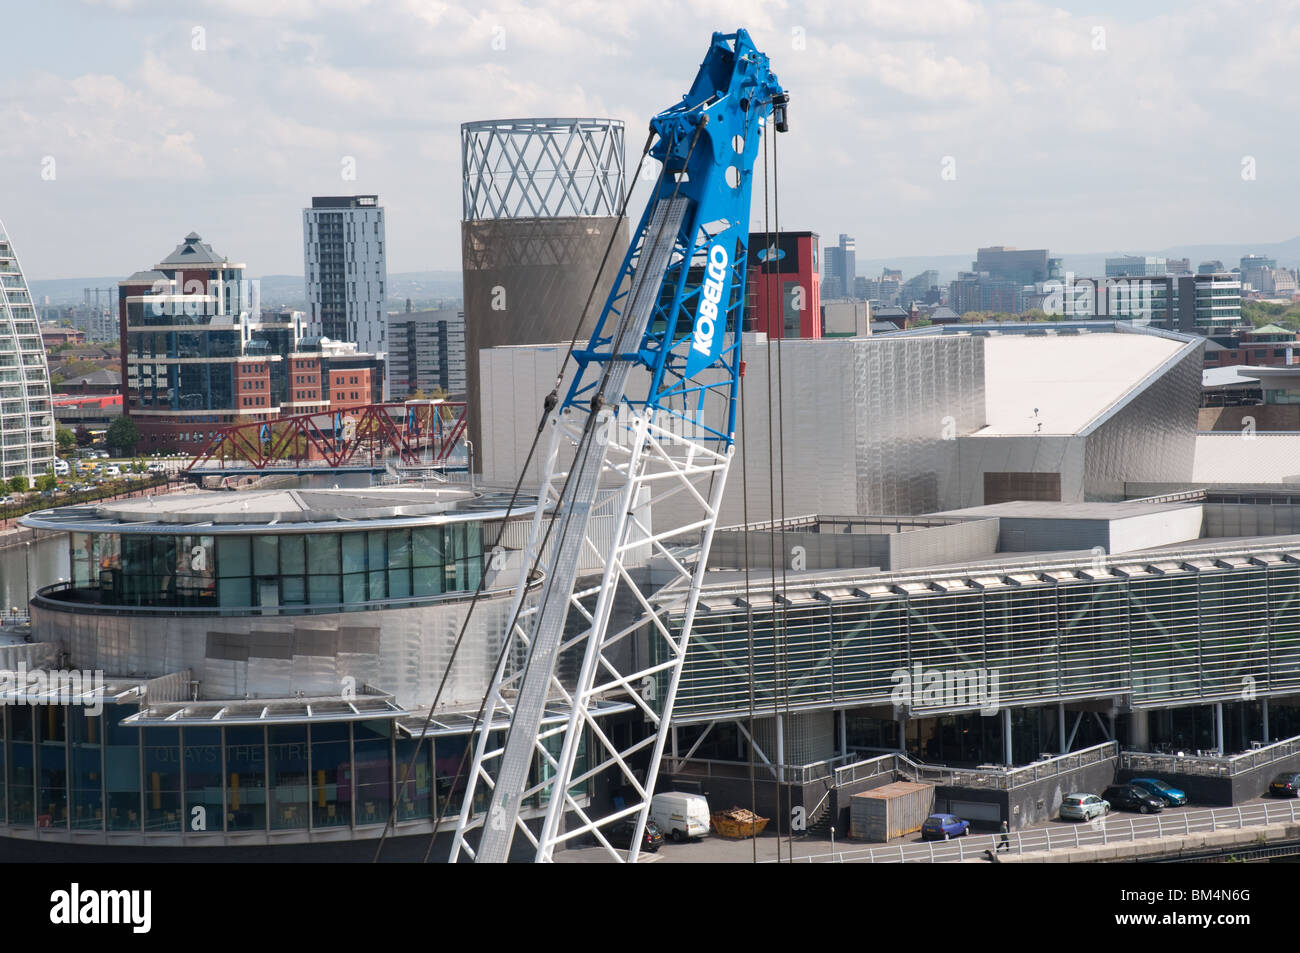 Regeneration Salford.Crane vor dem Hintergrund der Lowry Centre, Salford Quays, Greater Manchester, England. Stockfoto